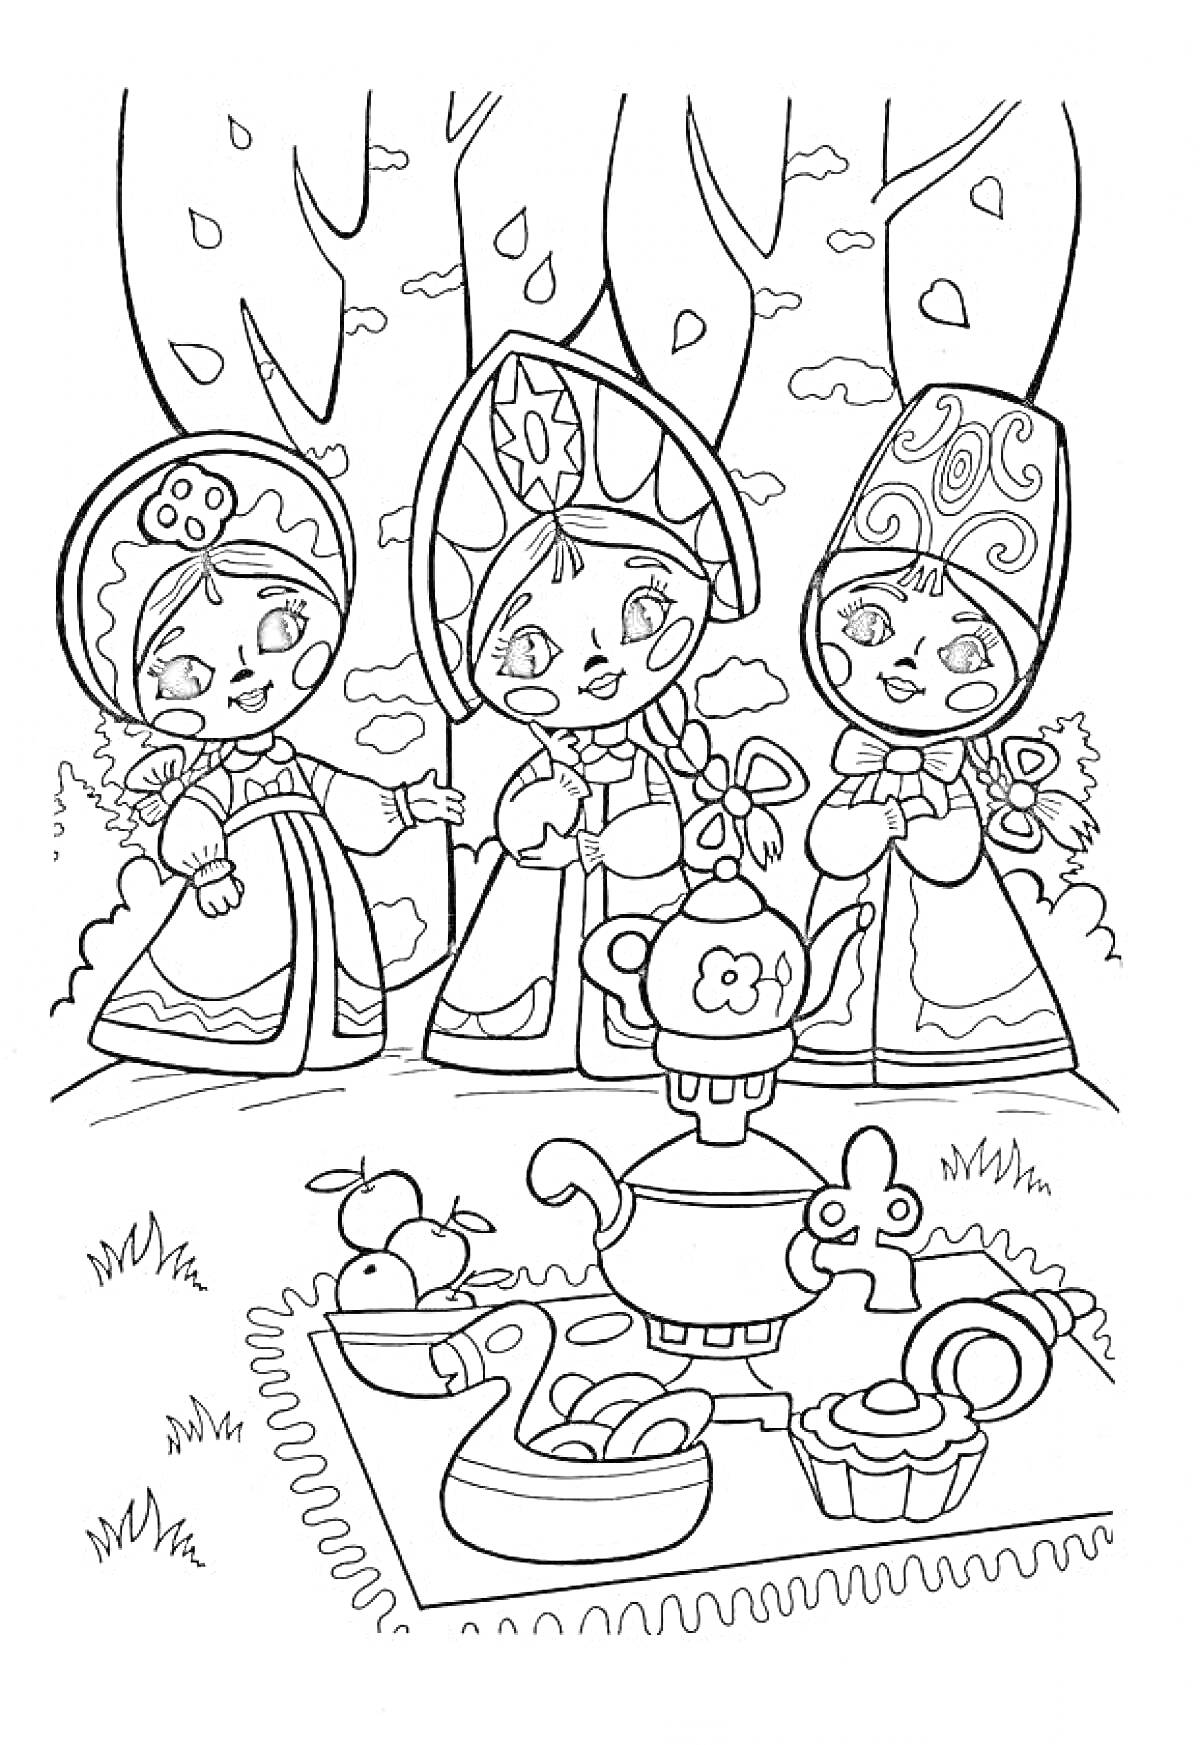 Три девицы и пикник с самоваром и сладостями в лесу